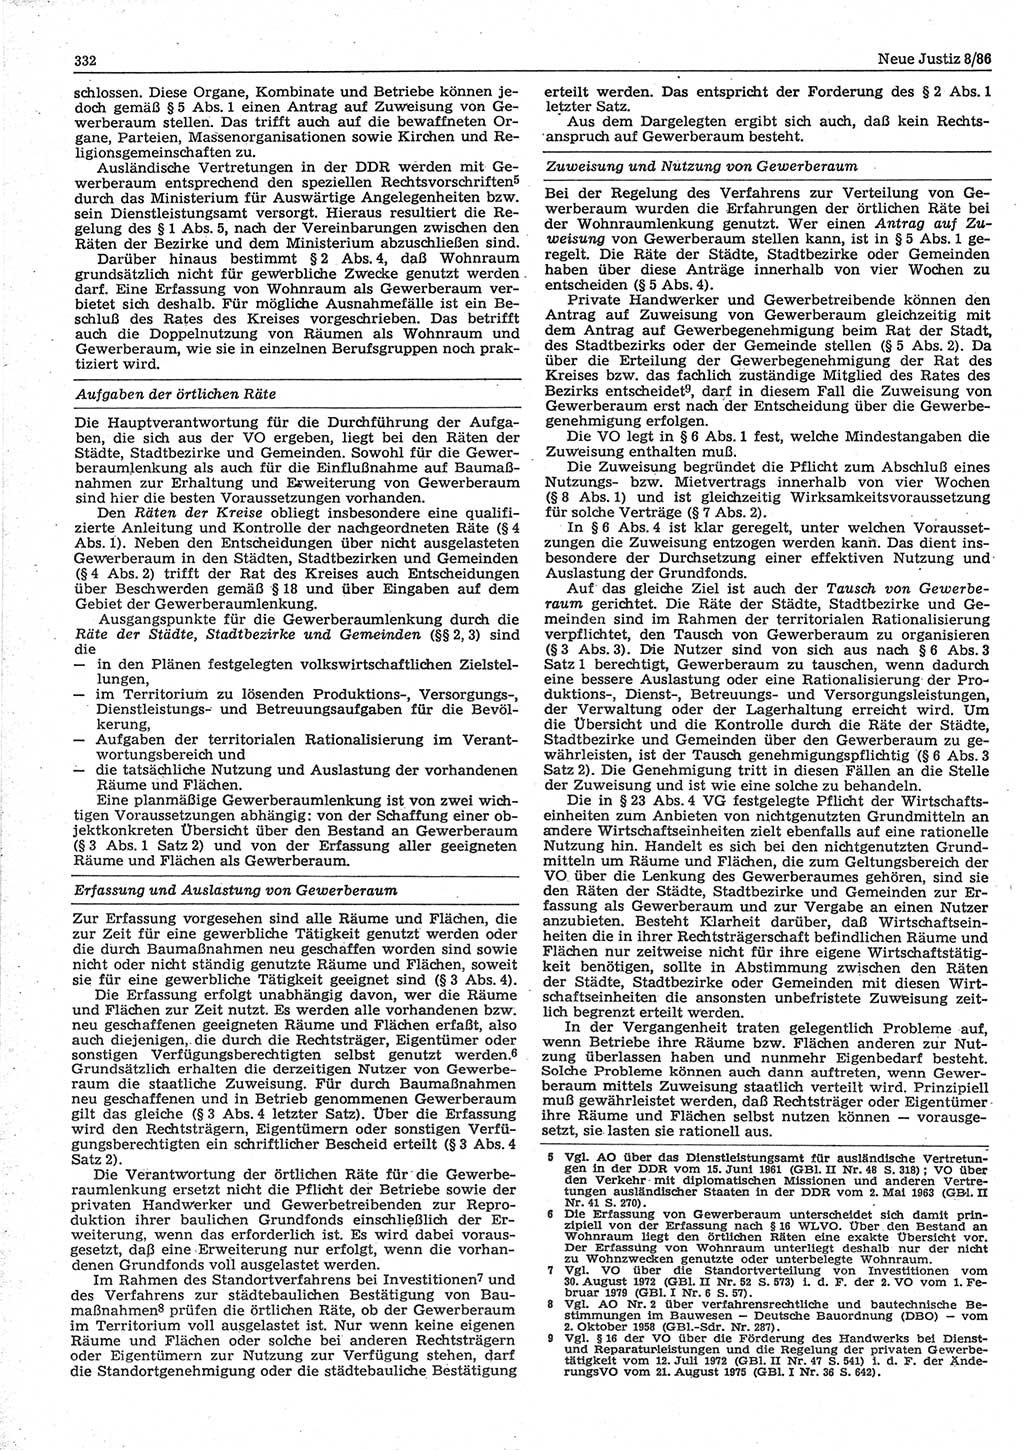 Neue Justiz (NJ), Zeitschrift für sozialistisches Recht und Gesetzlichkeit [Deutsche Demokratische Republik (DDR)], 40. Jahrgang 1986, Seite 332 (NJ DDR 1986, S. 332)